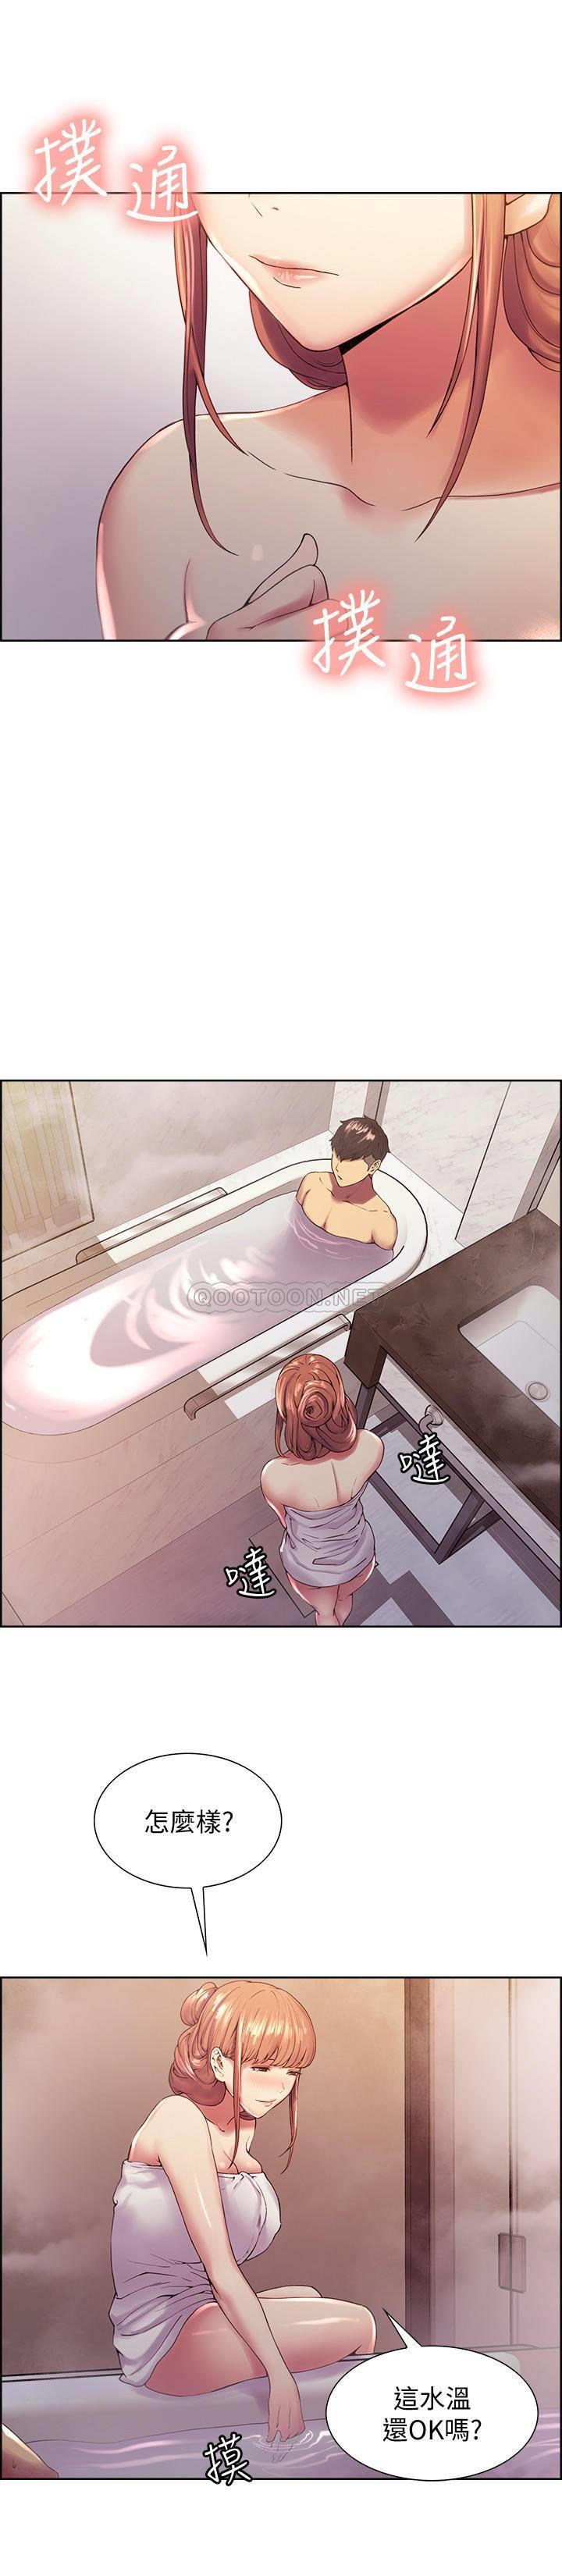 《室友招募中》漫画 第23话 - 小阿姨的泡泡泰国浴